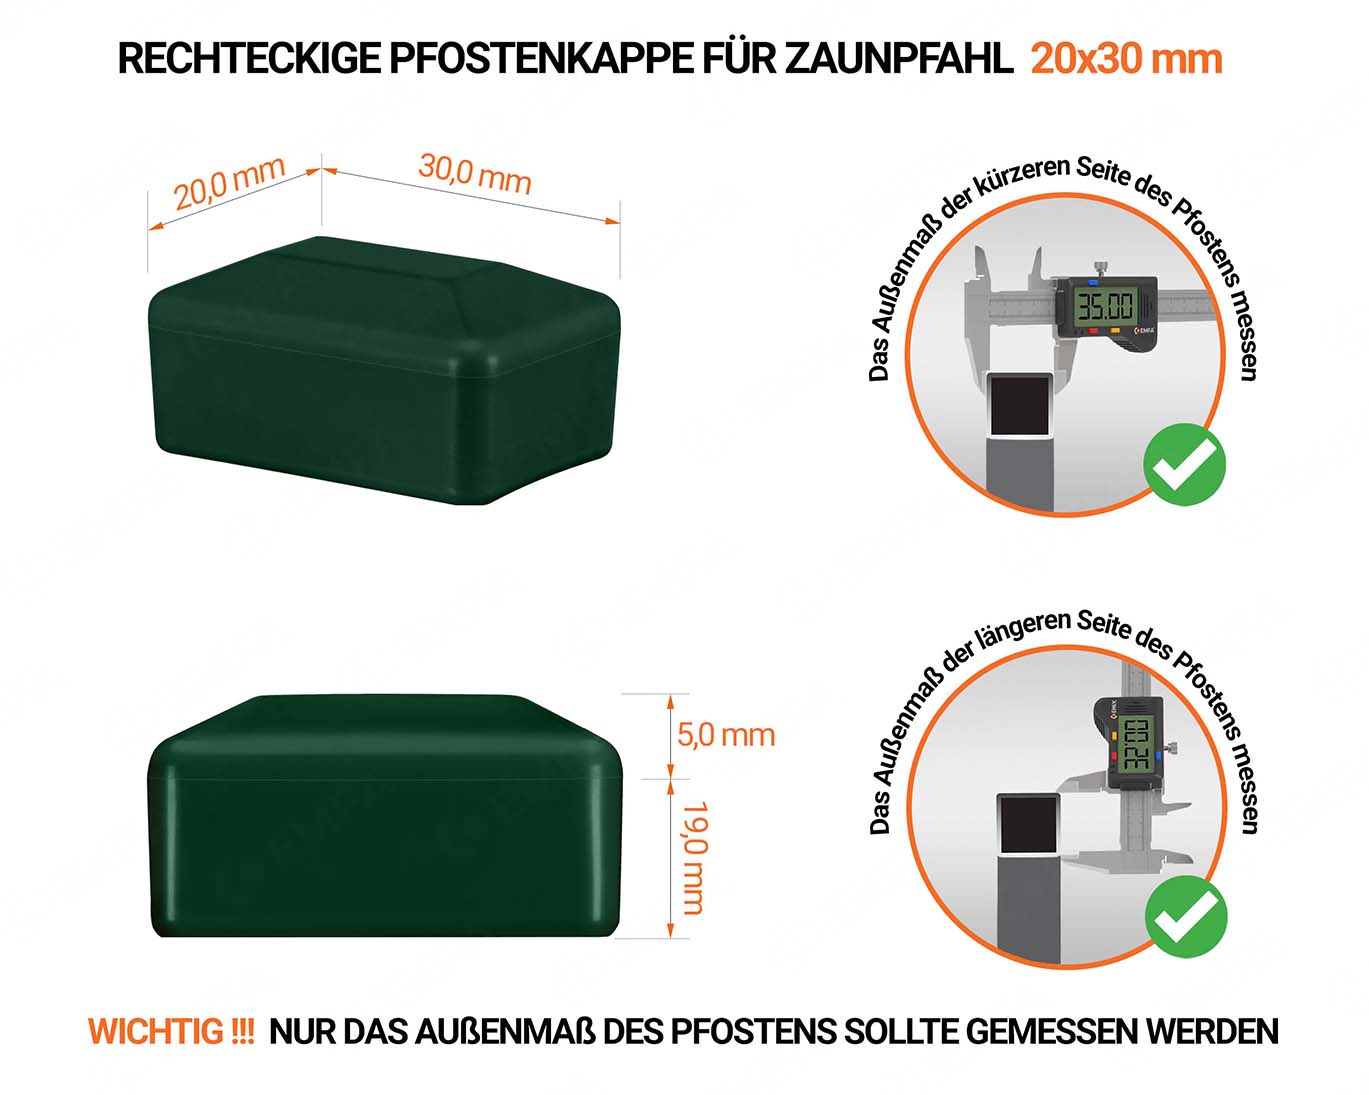 Grüne Pfostenkappen rechteckig für Pfostenmaße 20x30 mm mit technischen Abmessungen und Anleitung für korrekte Messung